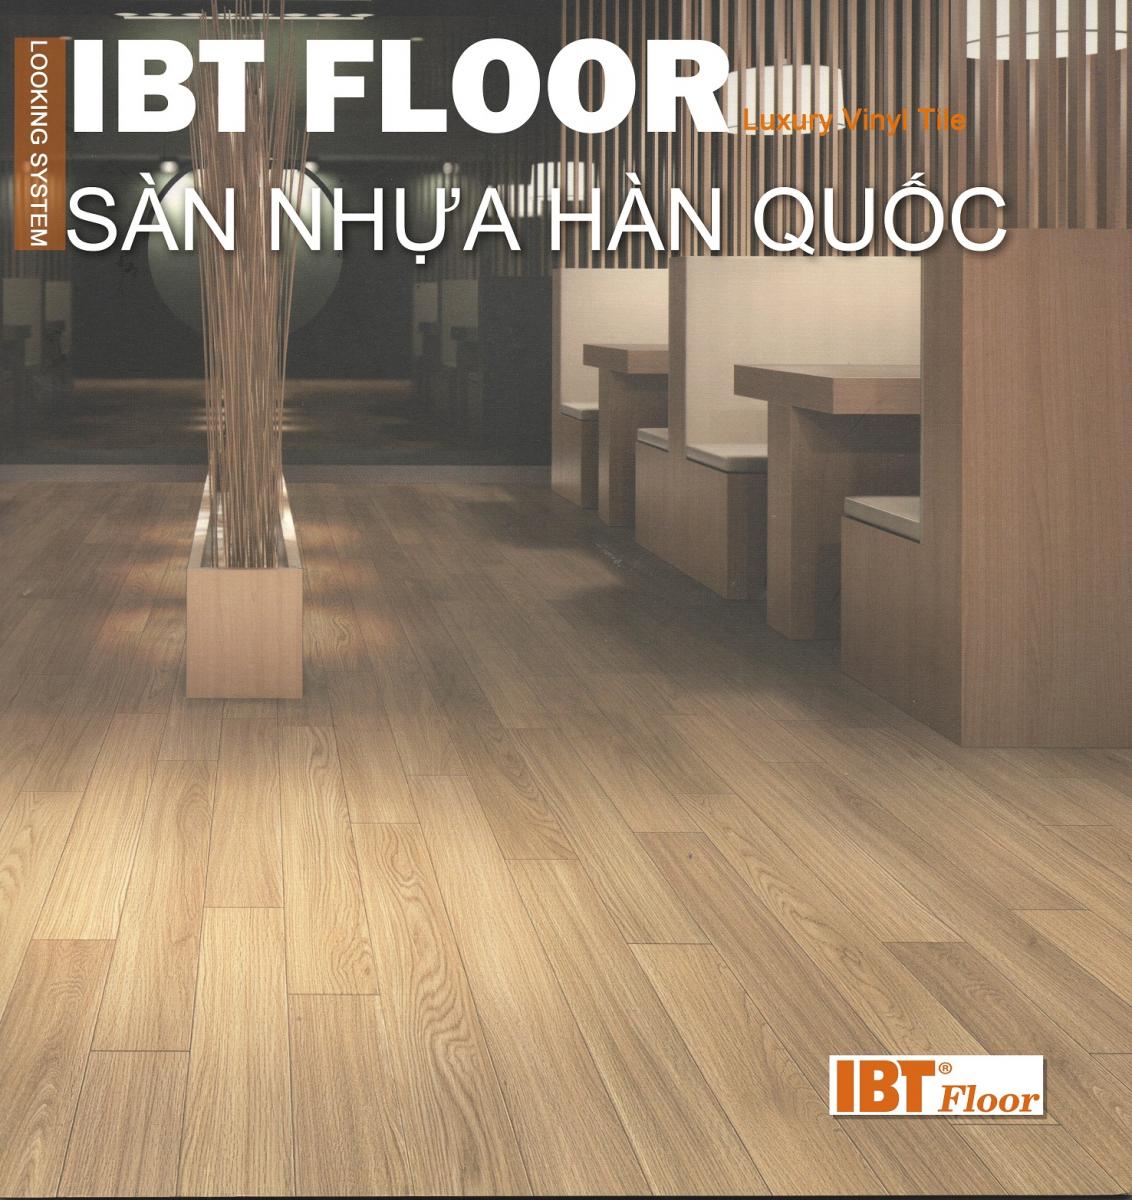 Sàn nhựa cao cấp hàn quốc IBT Floor - Thách thức mọi không gia thiết kế nội thất